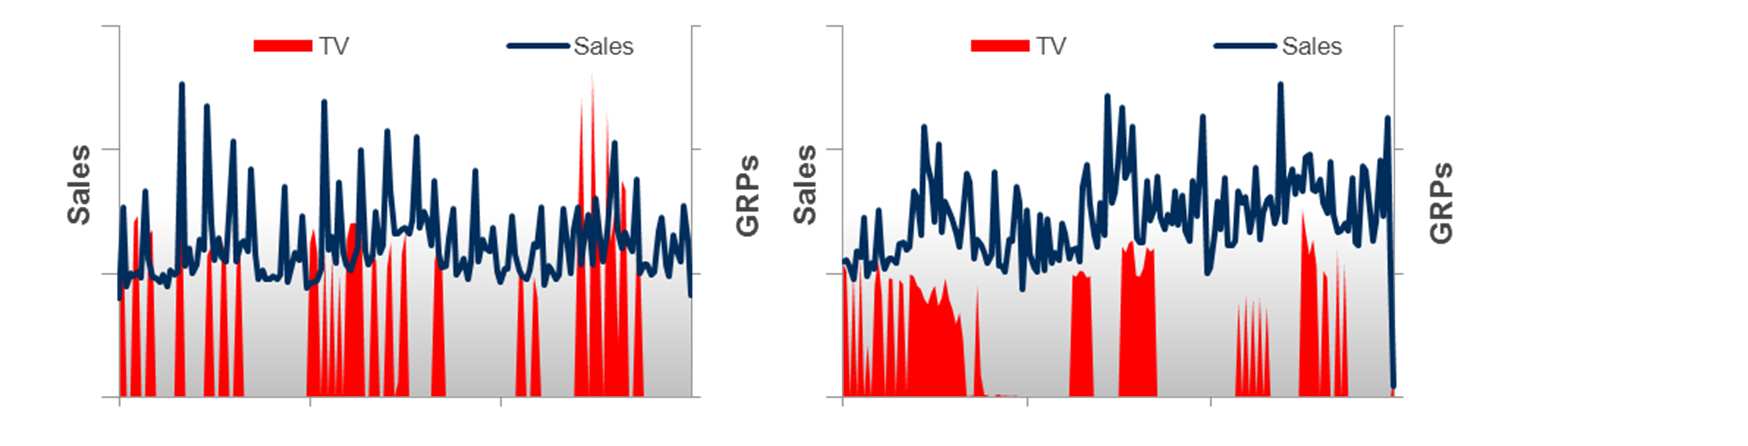 Fallbeispiel FMCG: Optimierung der Timing-Strategie Signifikante ROI-Steigerung im Zeitverlauf Medieneinsatz vor 2005 Medieneinsatz nach 2005 Das Fallbeispiel aus dem Bereich FMCG zeigt, dass TV